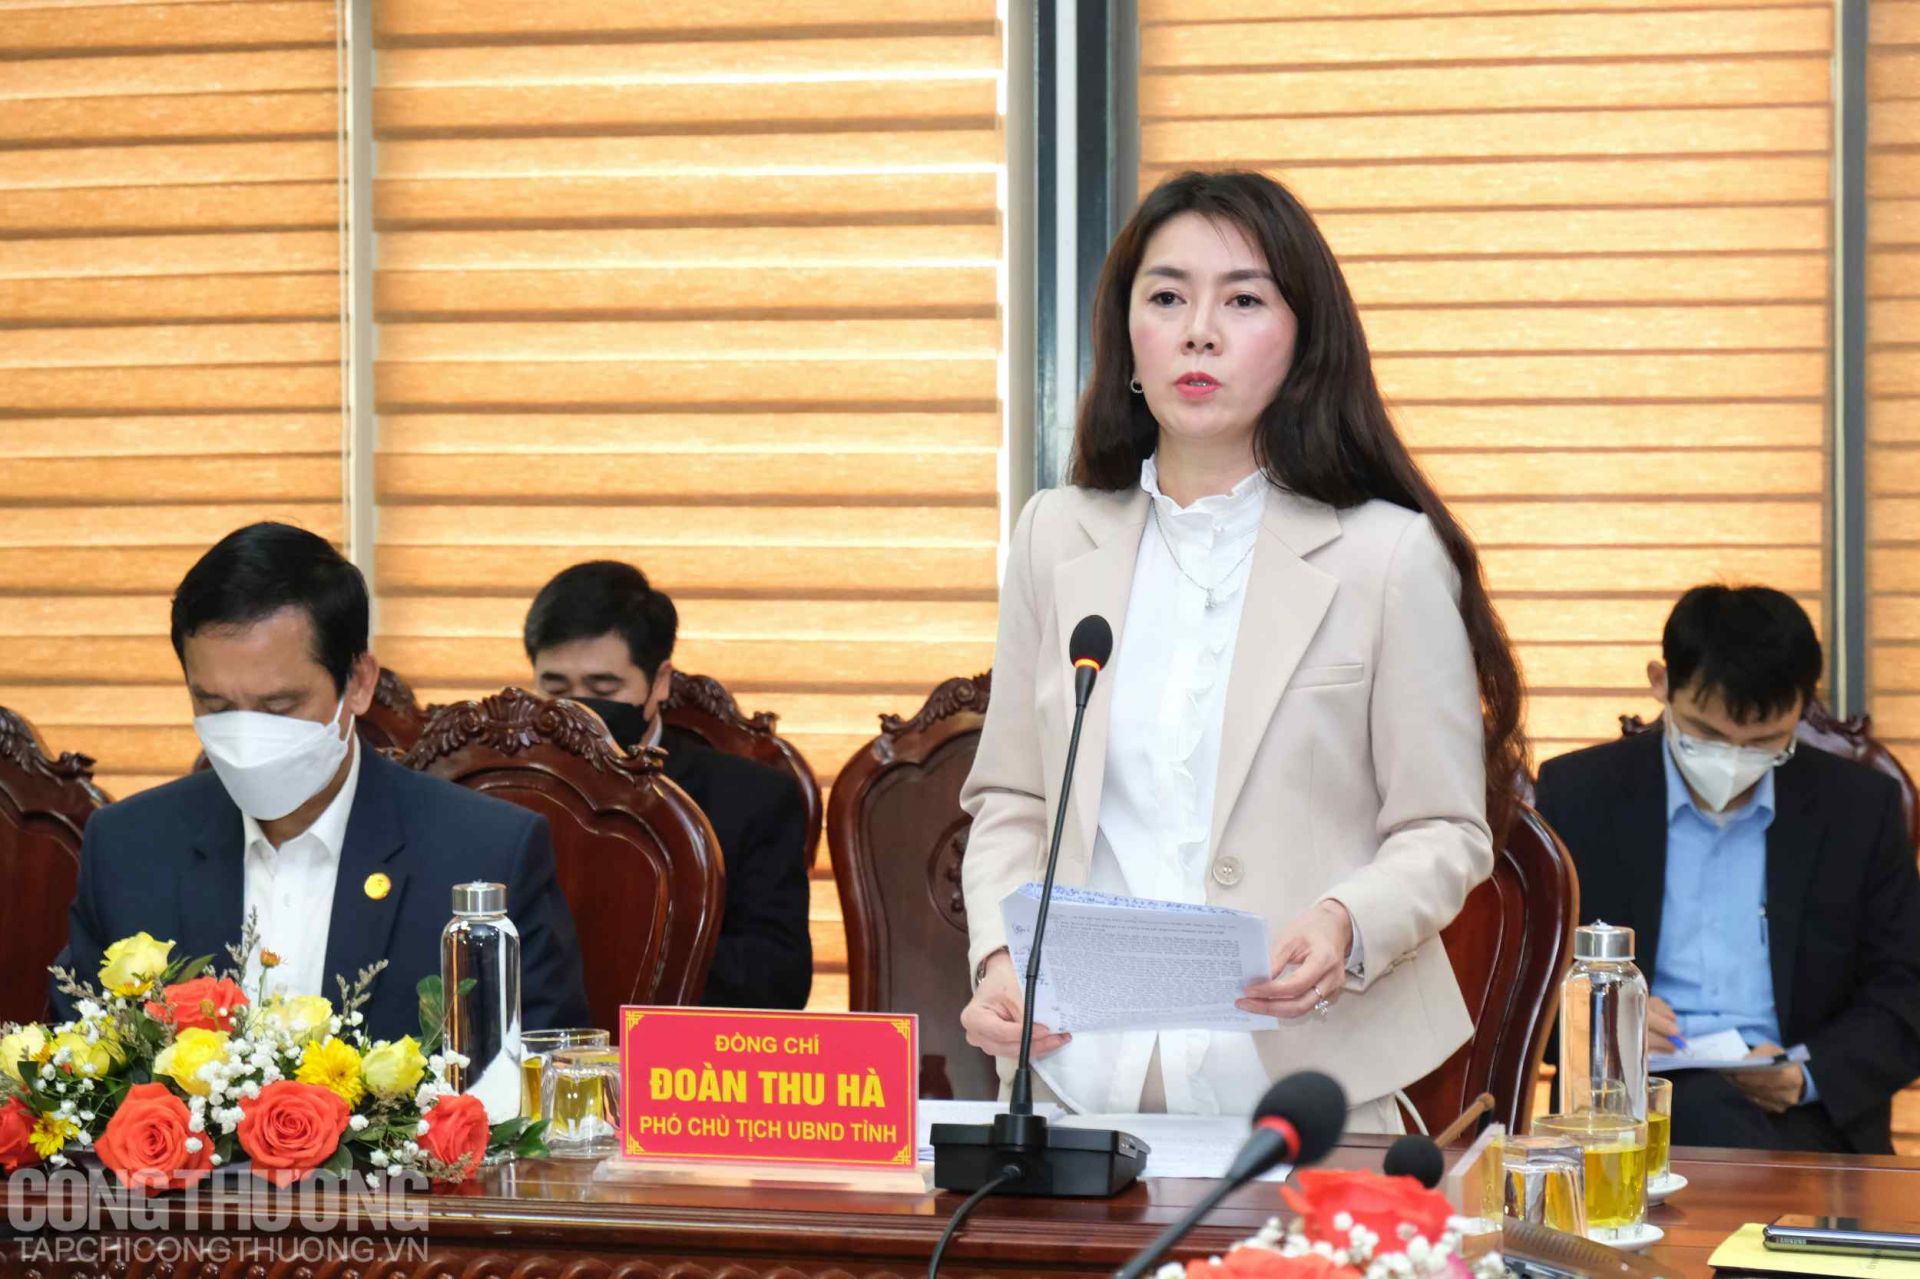 Bà Đoàn Thu Hà - Phó Chủ tịch UBND tỉnh Lạng Sơn báo cáo tại buổi làm việc